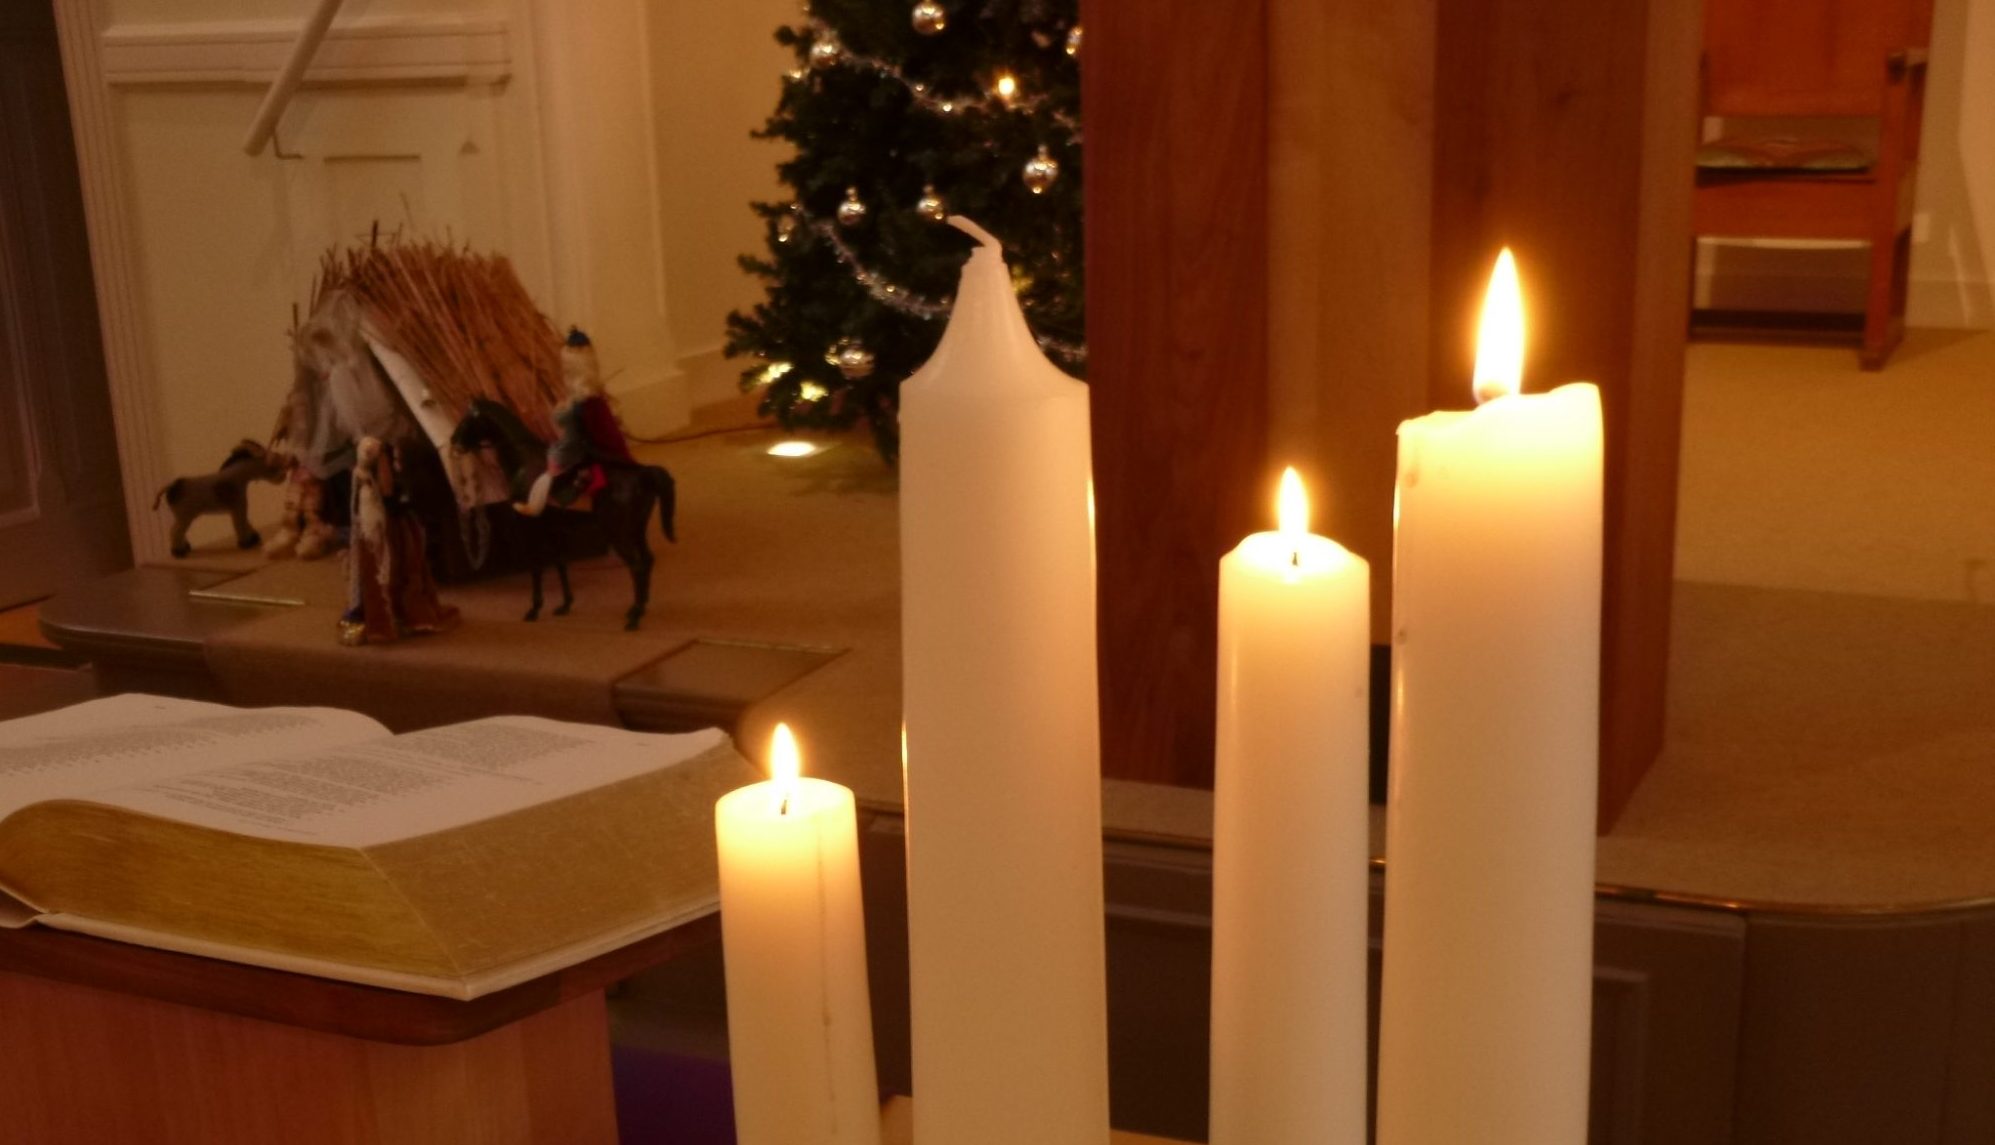 Kerkdienst 17 december, 3e advent – met overweging van Jasper van der Horst